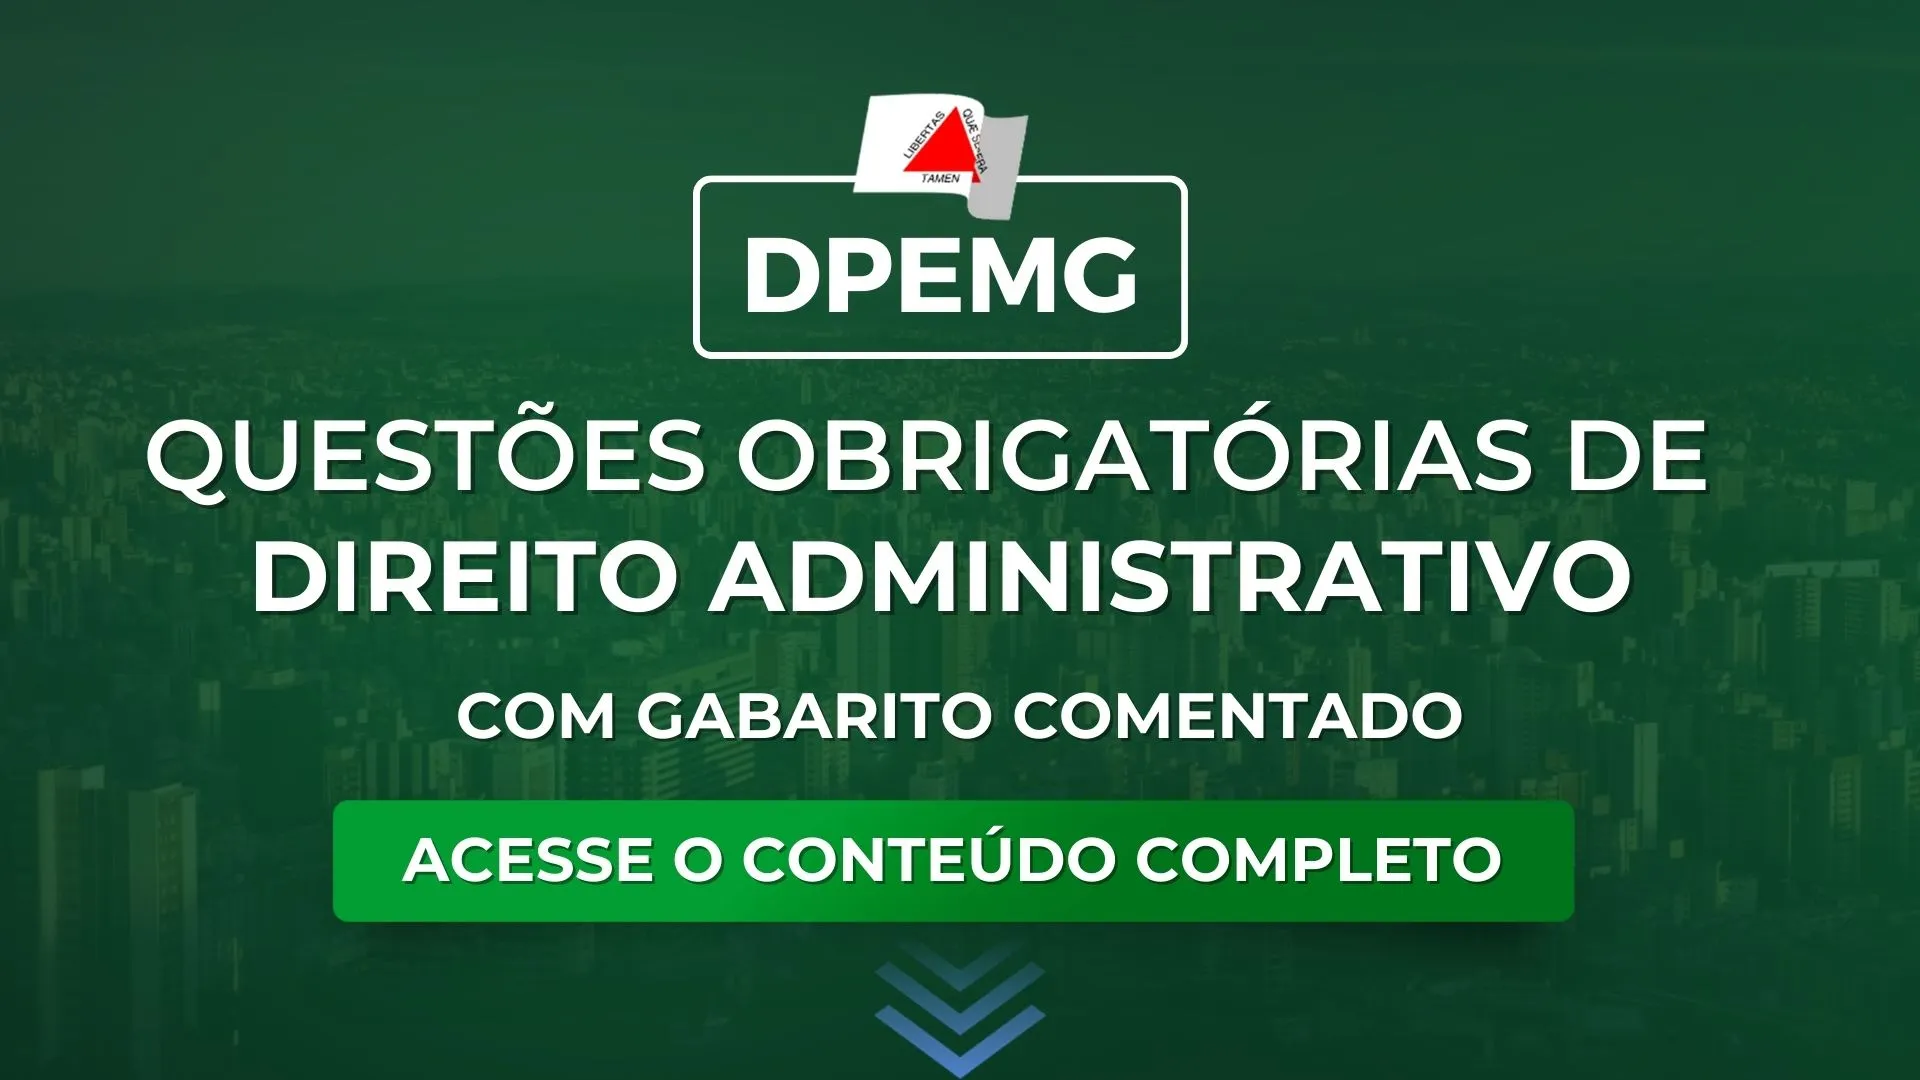 DPEMG: Questões obrigatórias de Administrativo com gabarito comentado para o concurso